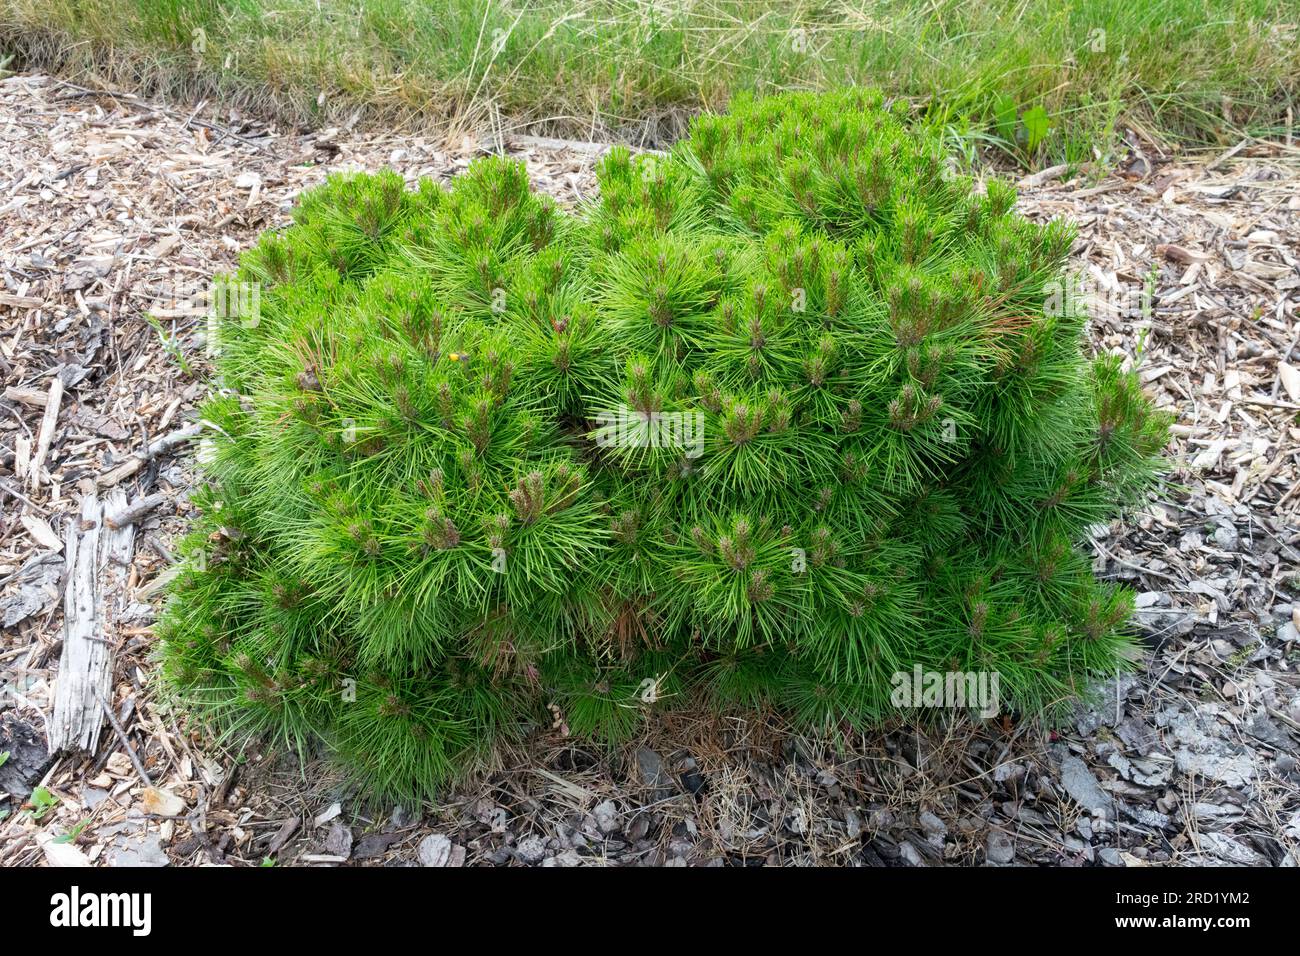 Faible, croissance, dense, feuillage, Pinus nigra 'Bambola', Nain, arbre approprié pour la rocaille Banque D'Images